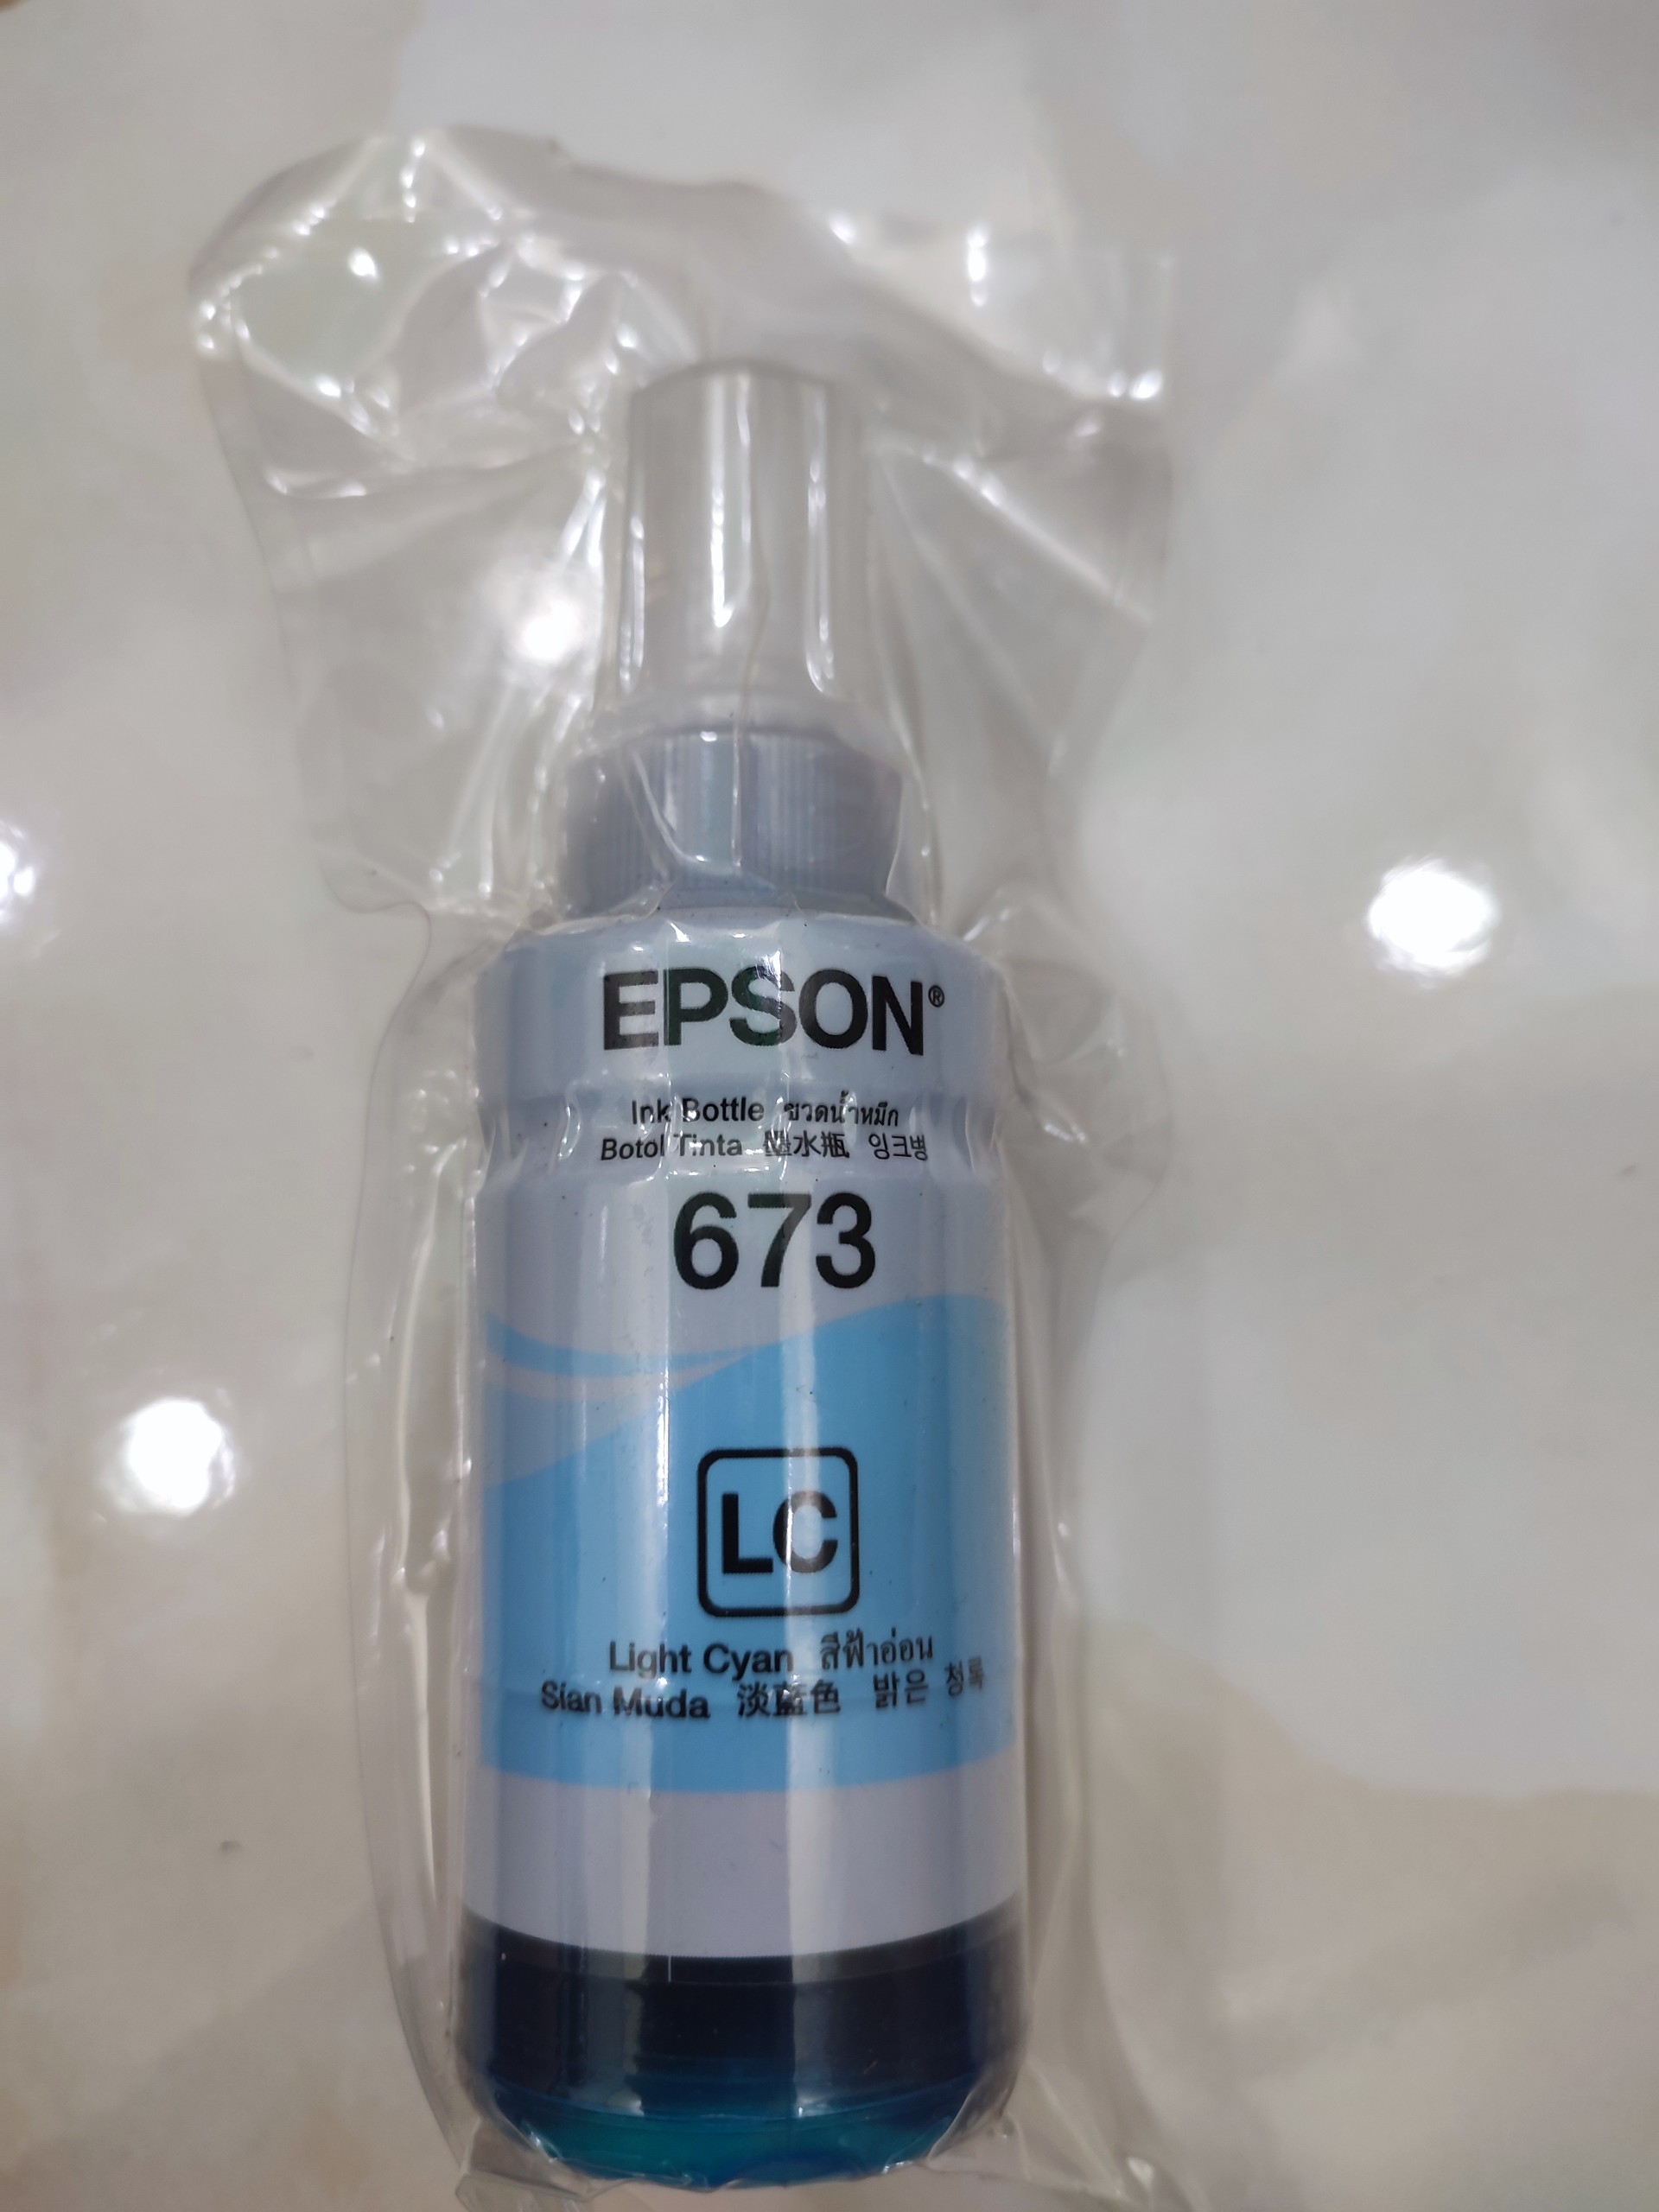 Mực Epson 673 màu xanh nhạt dành cho máy Epson L805 / L850 / L1800 / L810 / L800